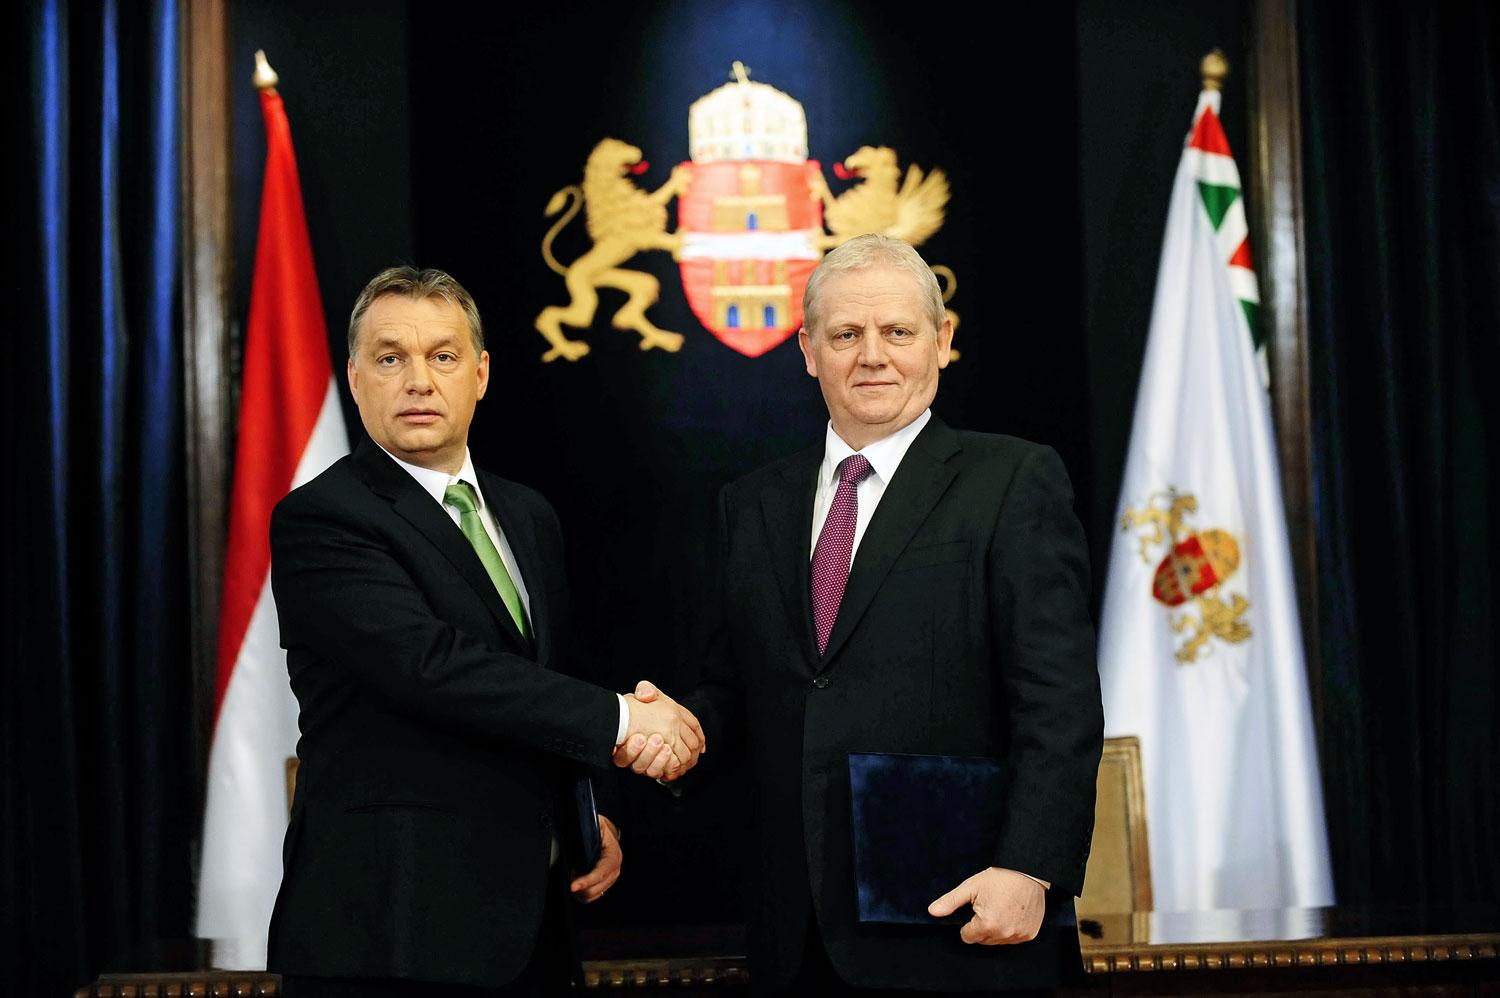 Orbán és Tarlós egyik kézfogása tavaly. A főpolgármester még bízik